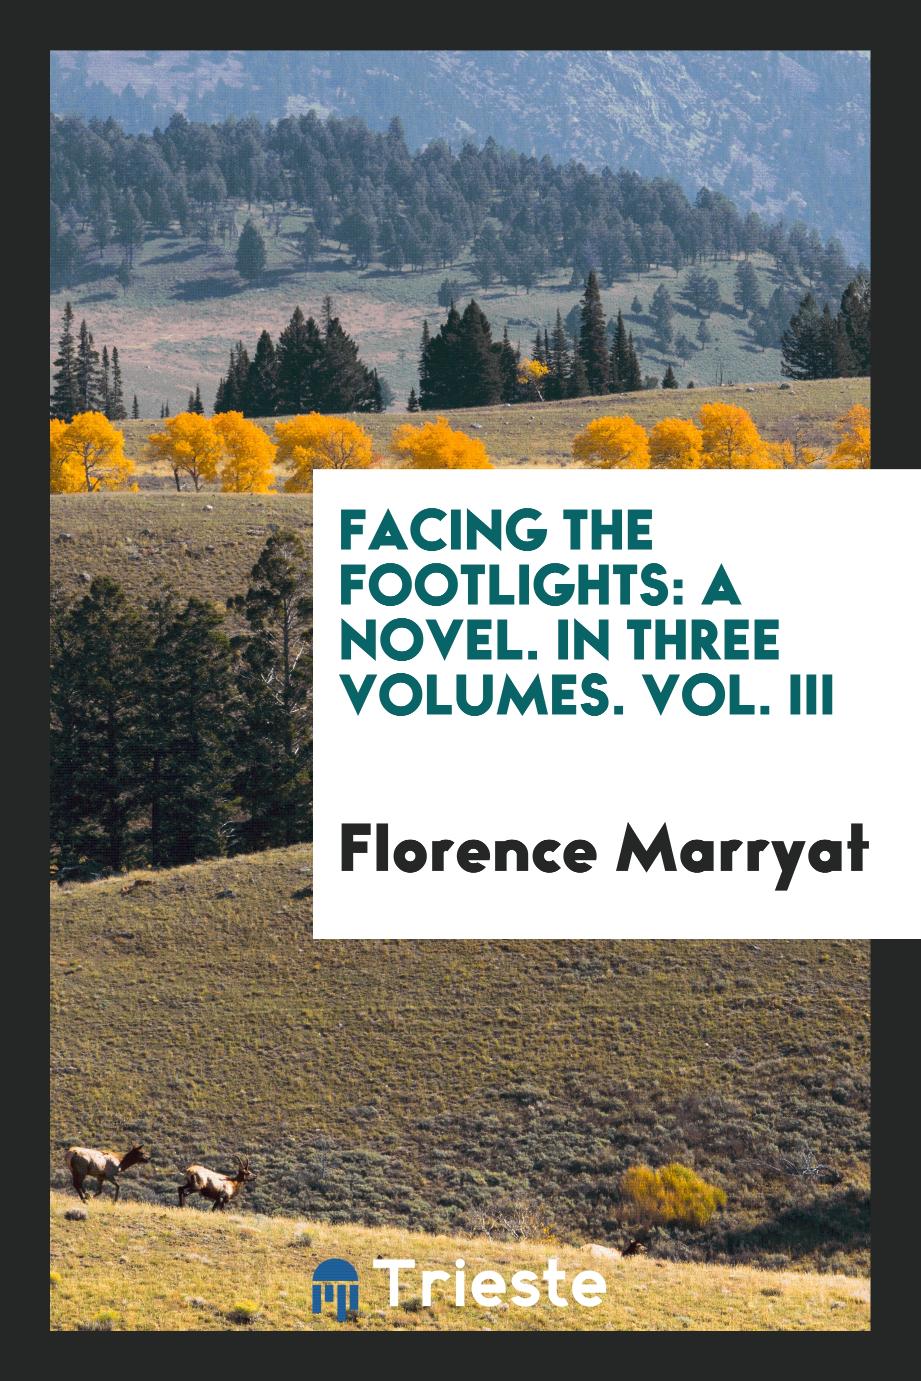 Facing the footlights: A Novel. In Three Volumes. Vol. III